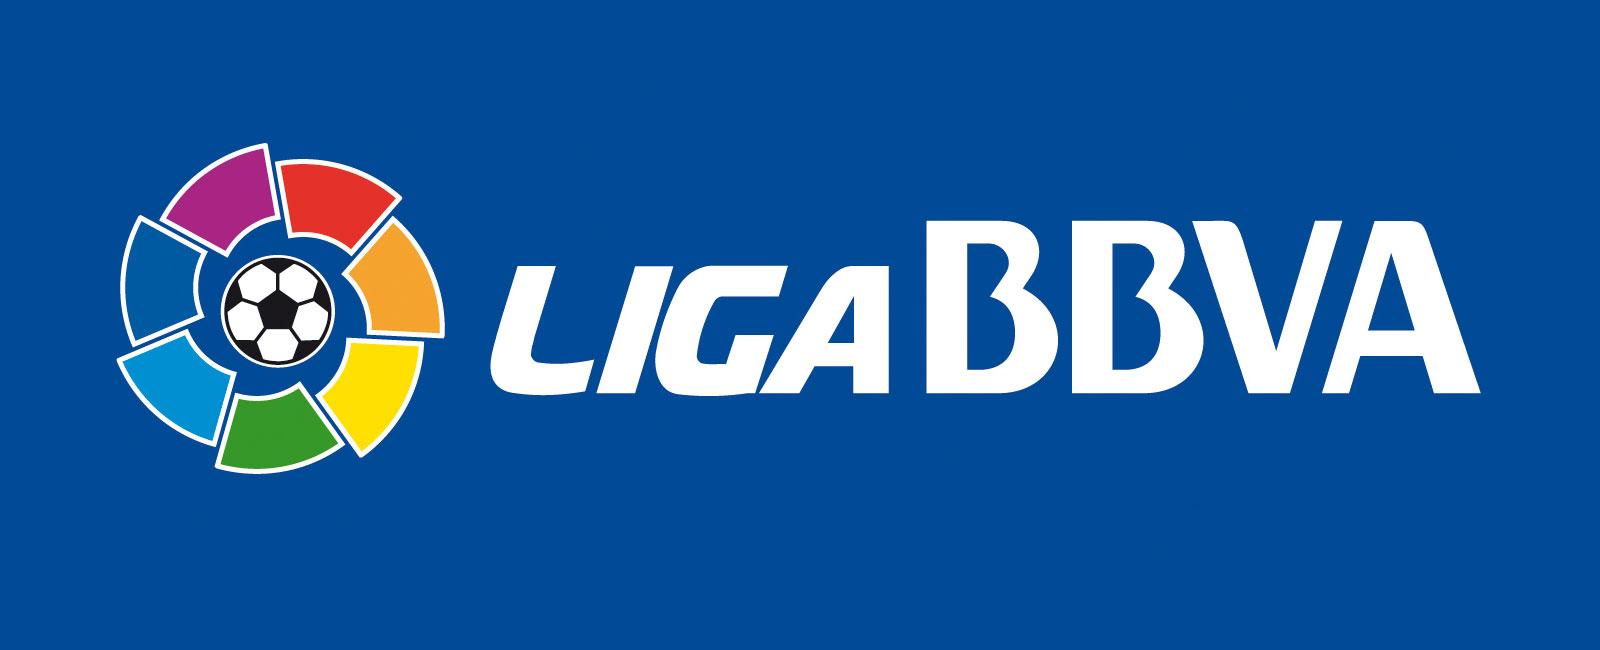 la-liga-badge (3)